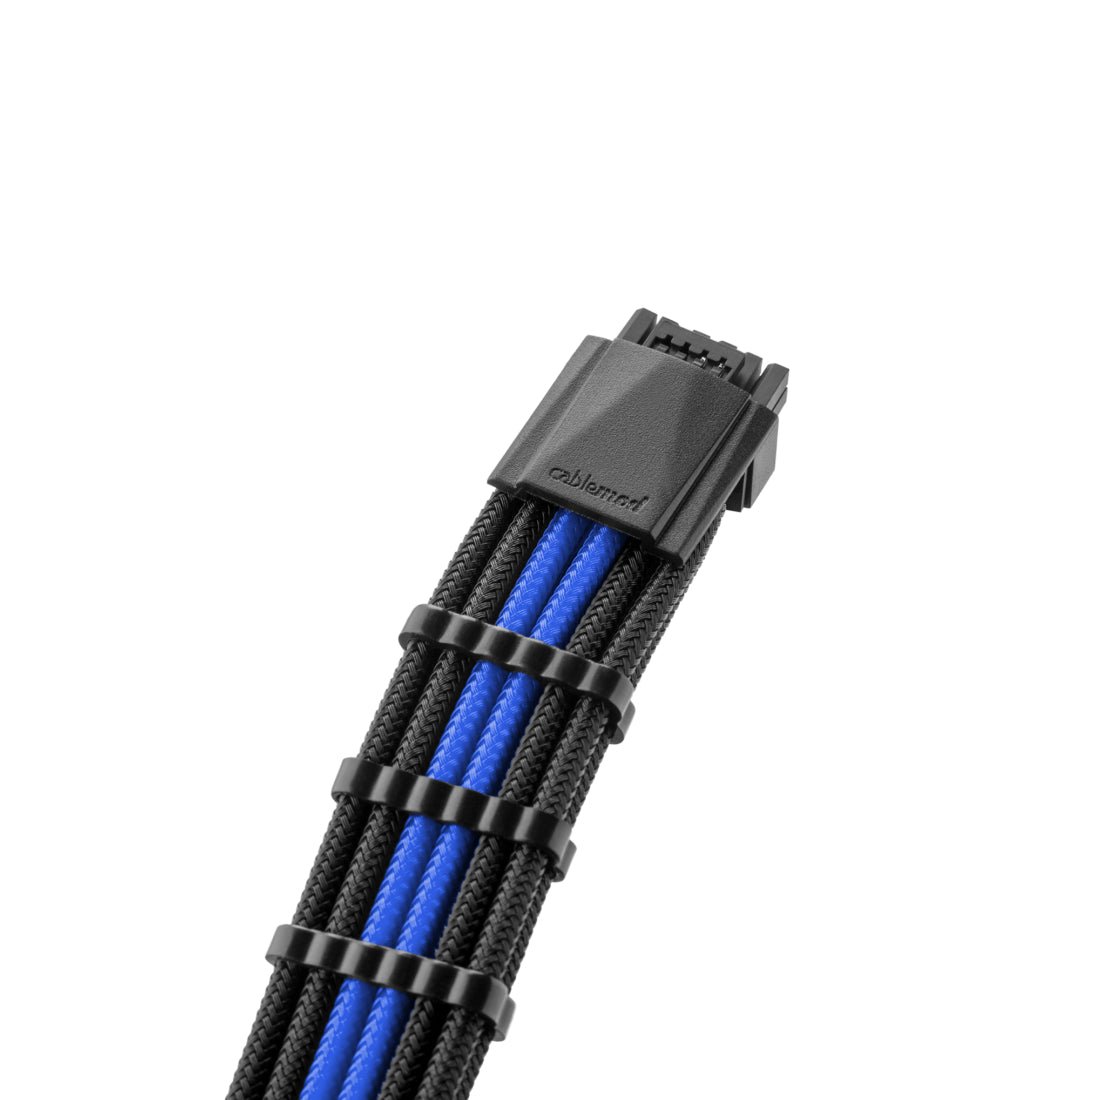 CableMod Pro ModMesh 12VHPWR PCI-e Cable Extension (Black & Blue, 16-pin to Triple 8-pin, 45cm) - كابل - Store 974 | ستور ٩٧٤